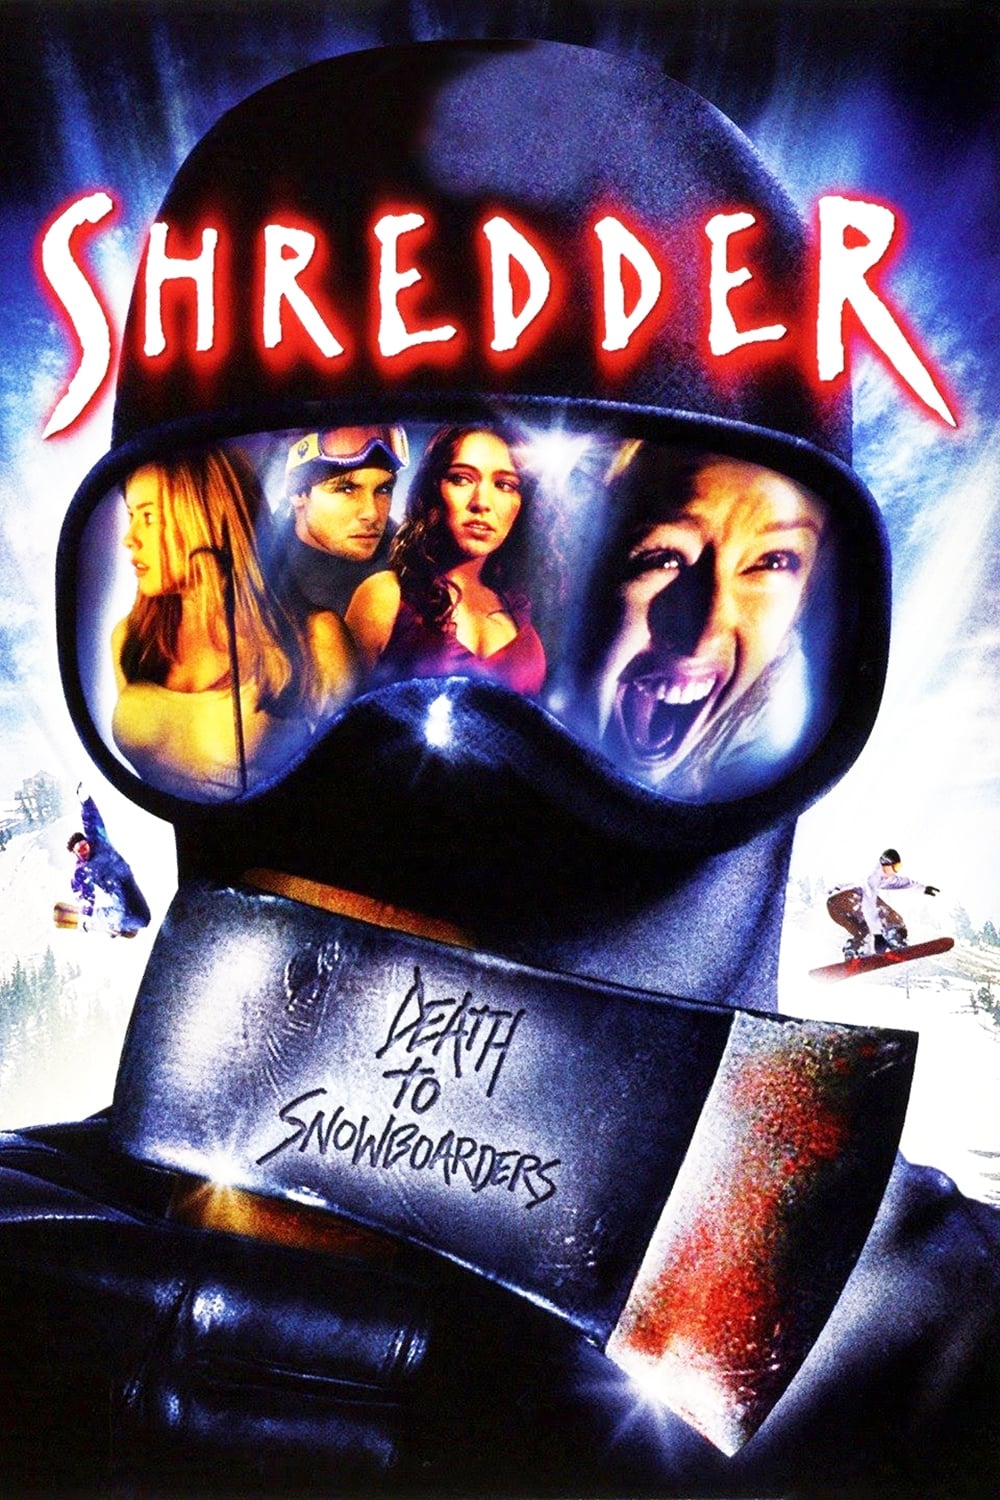 Shredder (2003)